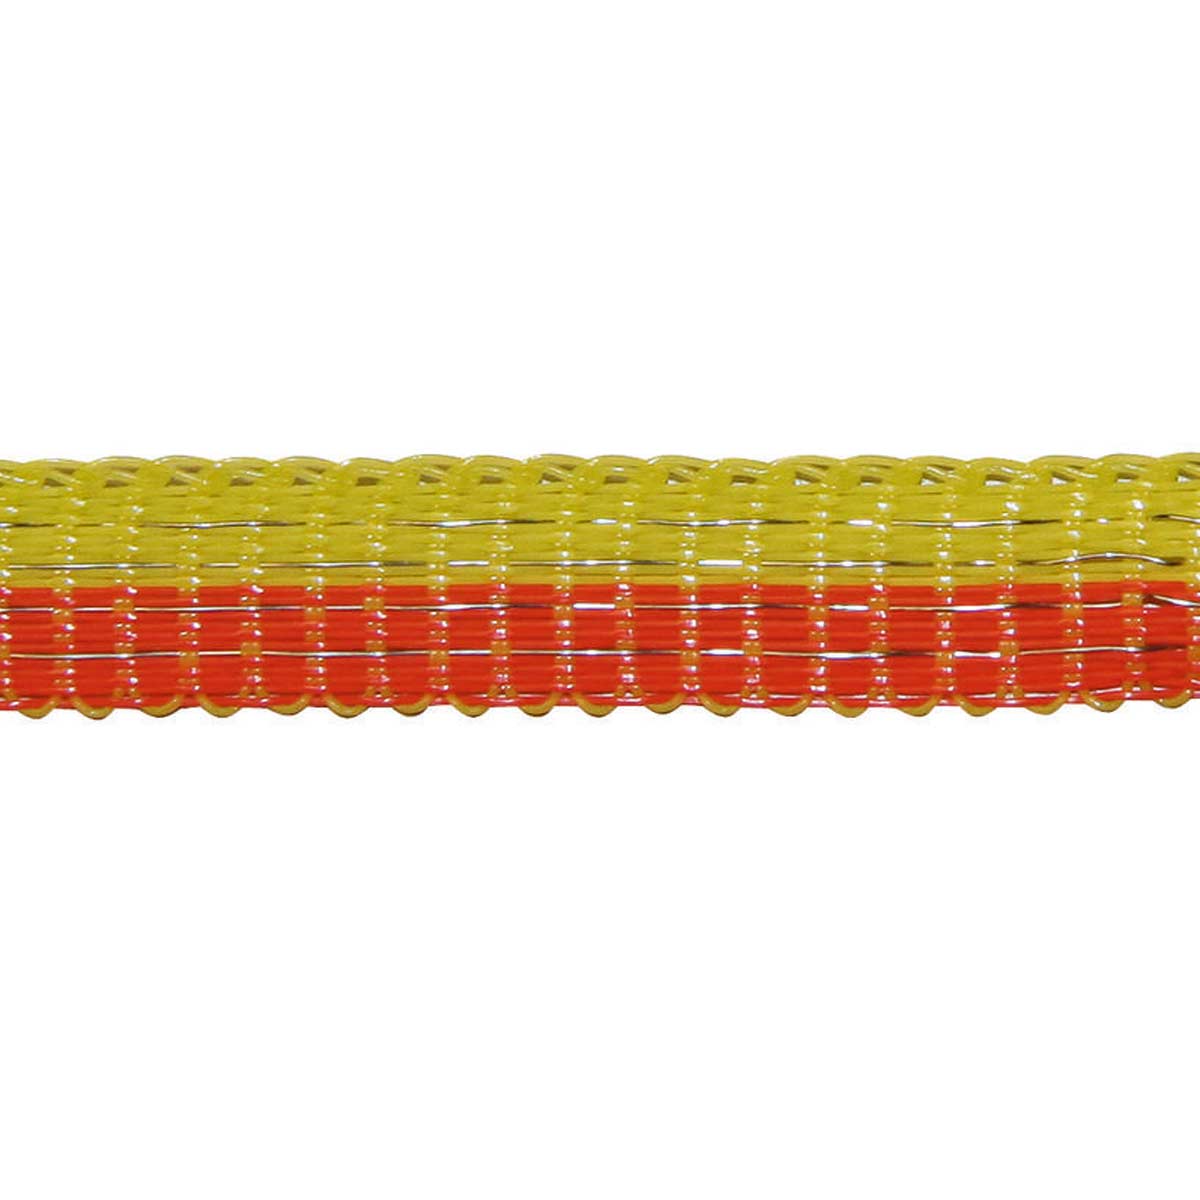 Agrarzone villanypásztor szalag Classic 250m, 10mm, 4x0,16 Niro, sárga-narancssárga 250 m x 10 mm